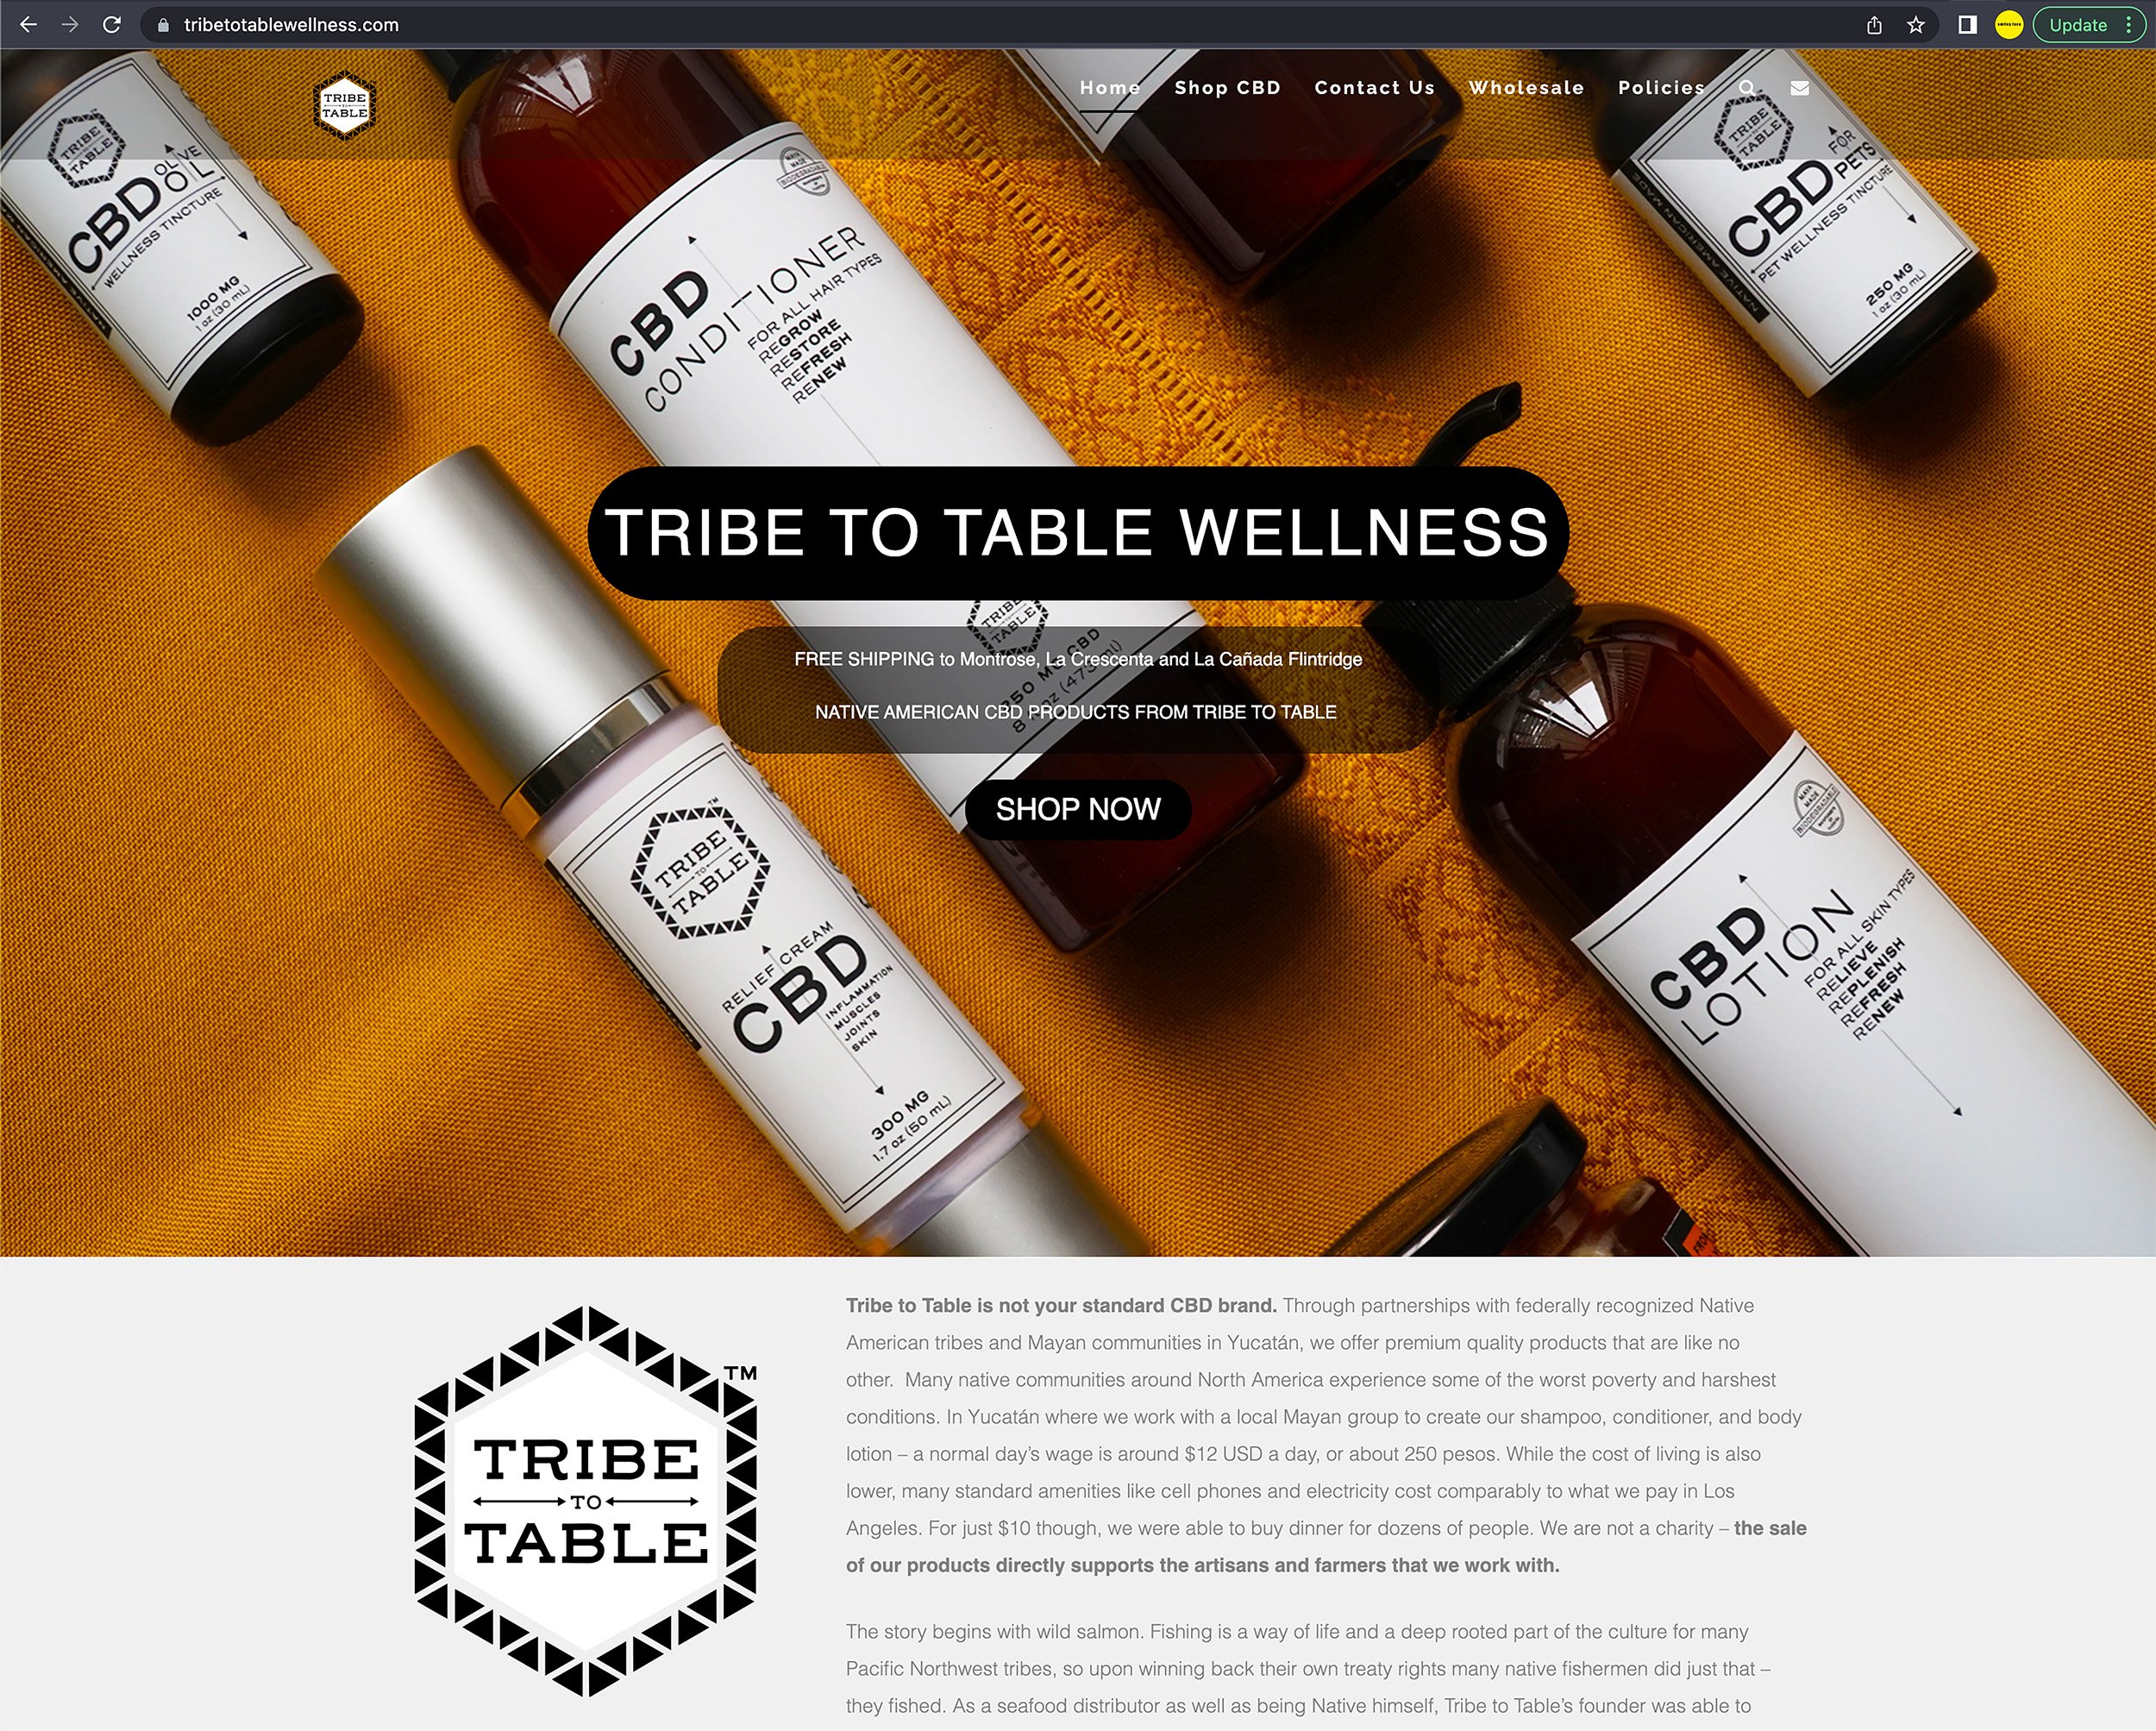 Tribe wellness screenshot 1.jpg